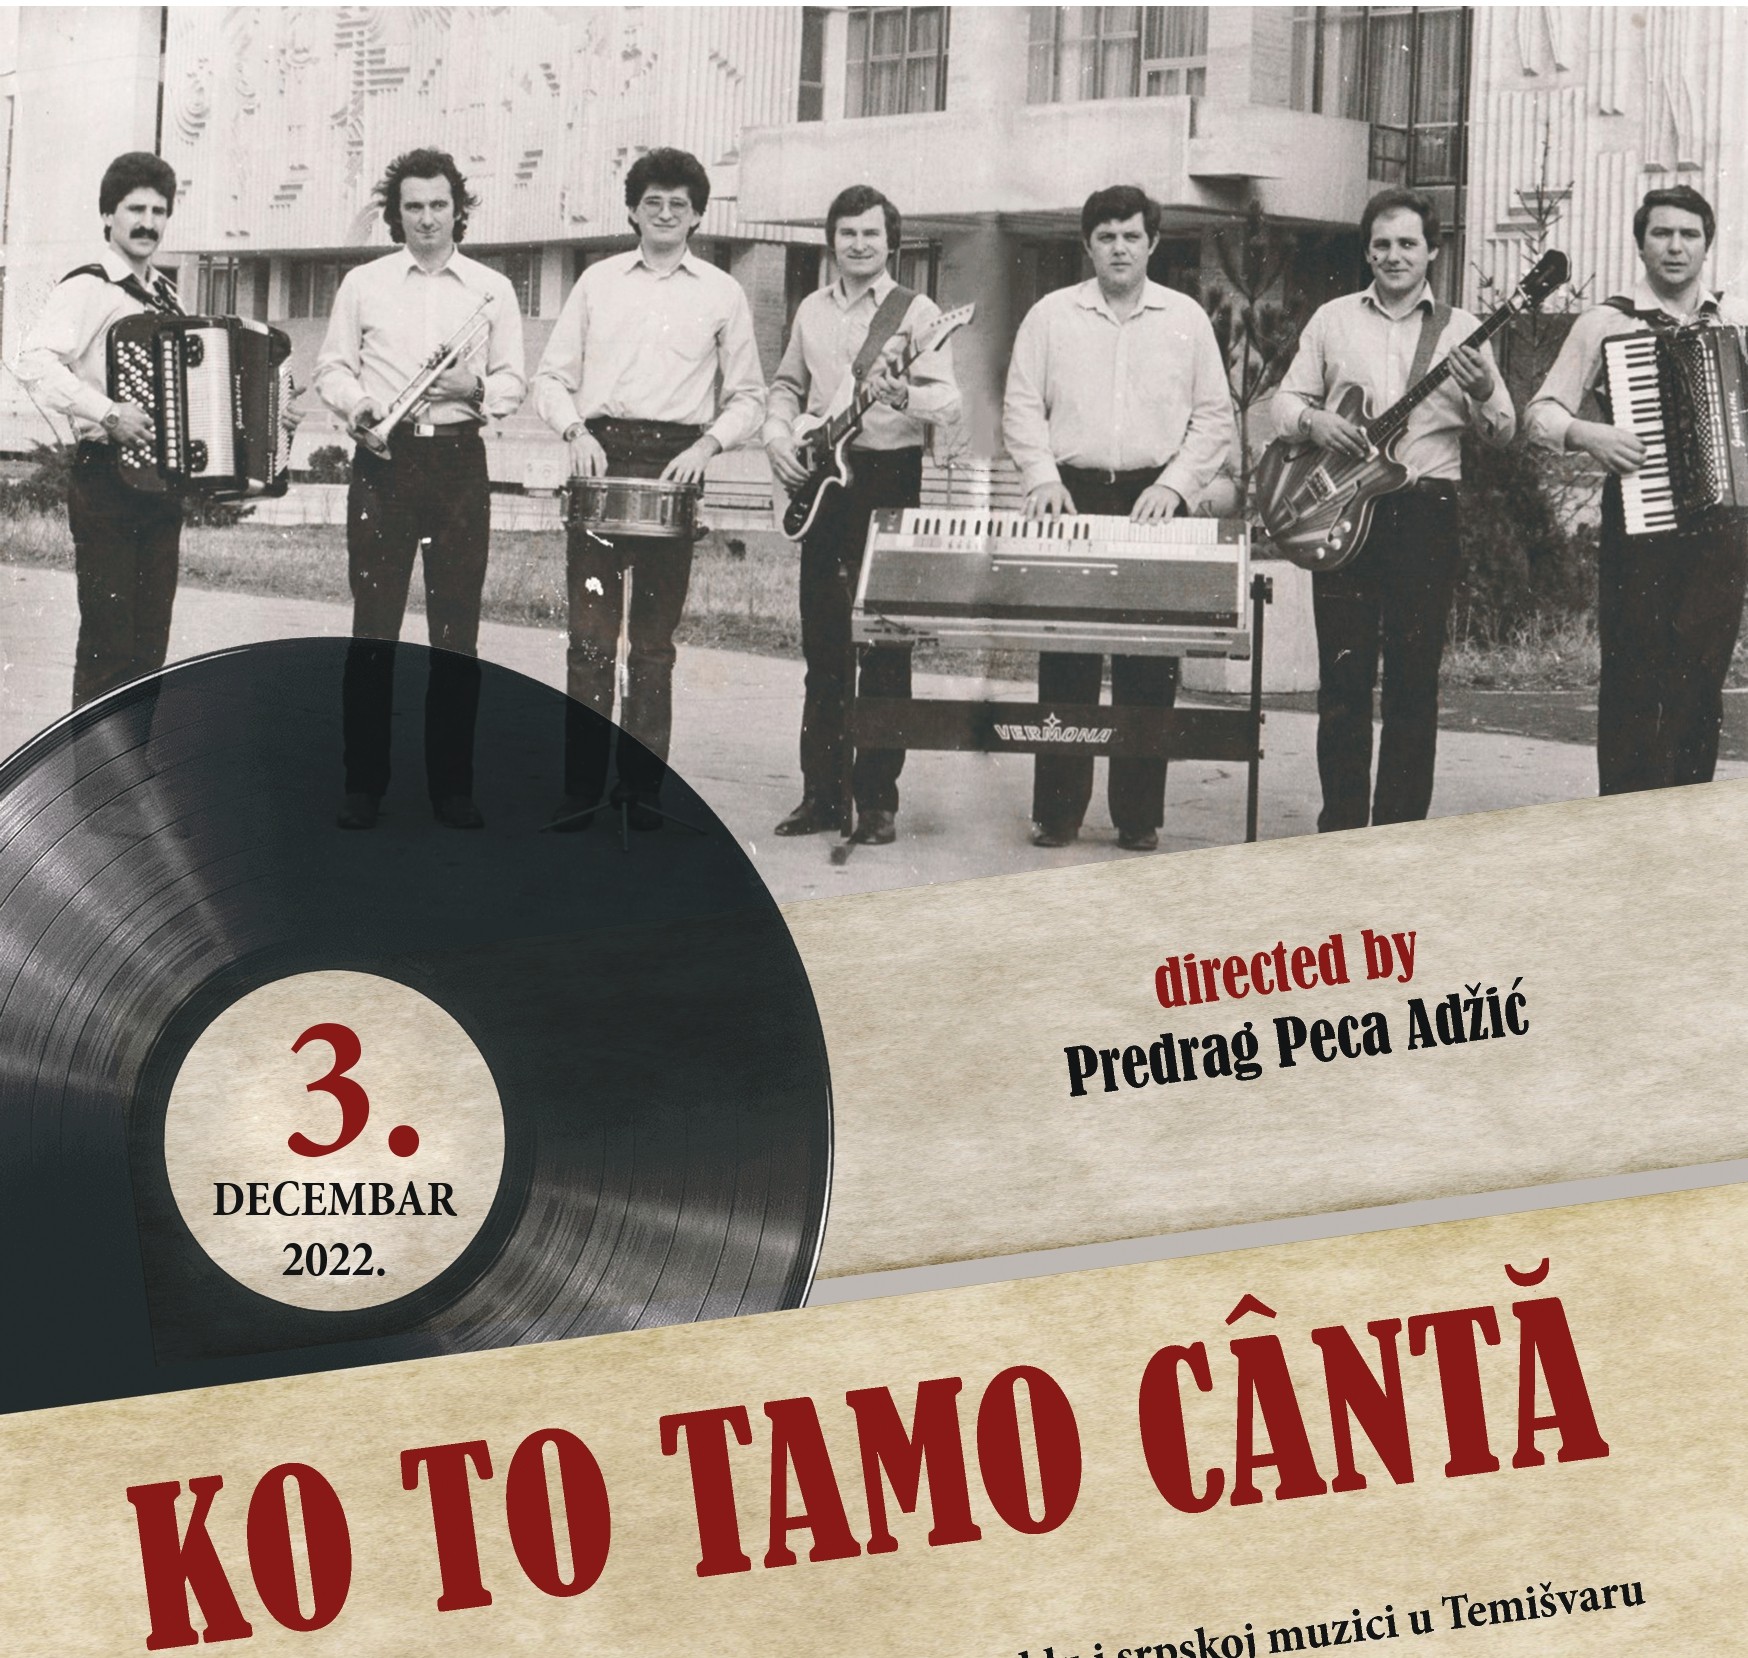 Projekcija filma "KO TO TAMO CÂNTĂ" u Centru za kulturu u Beloj Crkvi